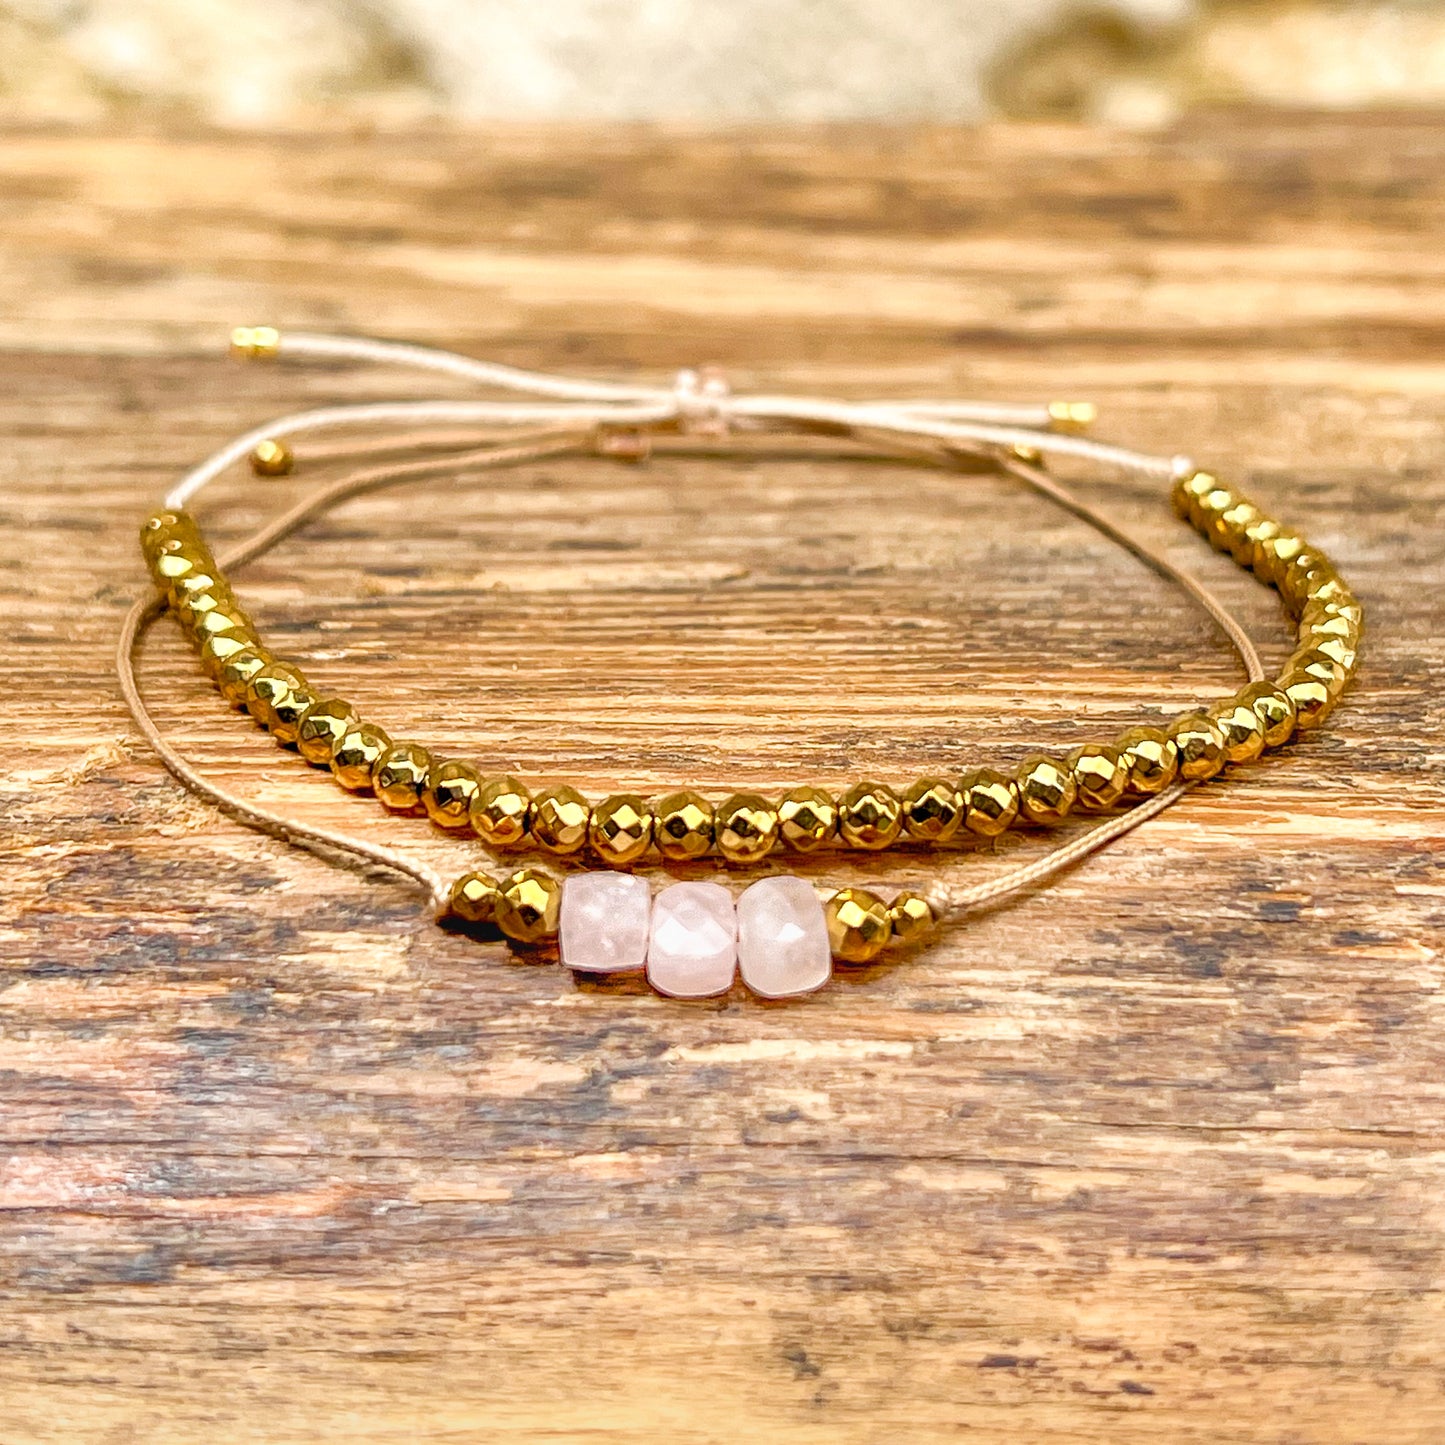 Duo de bracelets ajustables composés de perles de pierres fines naturelles en perles cubiques d'opale blanche rosée et d'hématite dorée. Les bracelets peuvent se porter indépendamment.